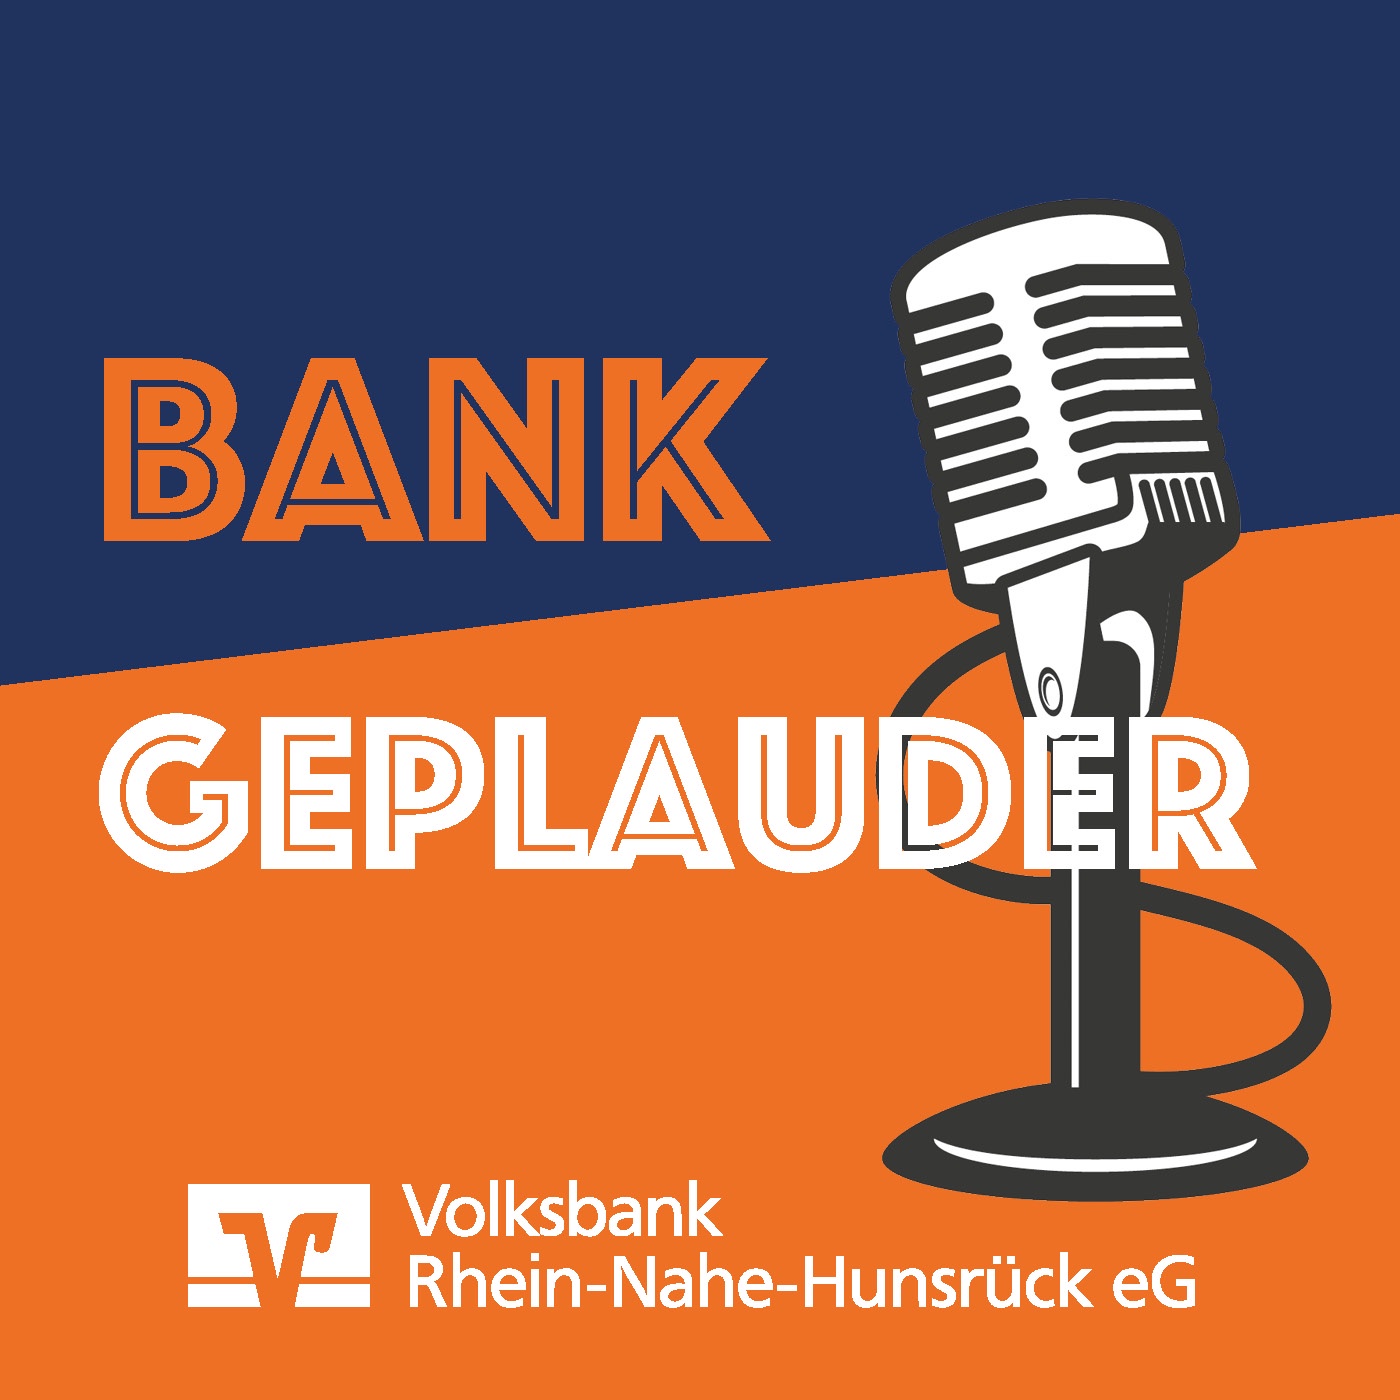 BANKGEPLAUDER - der Podcast der Volksbank Rhein-Nahe-Hunsrück eG